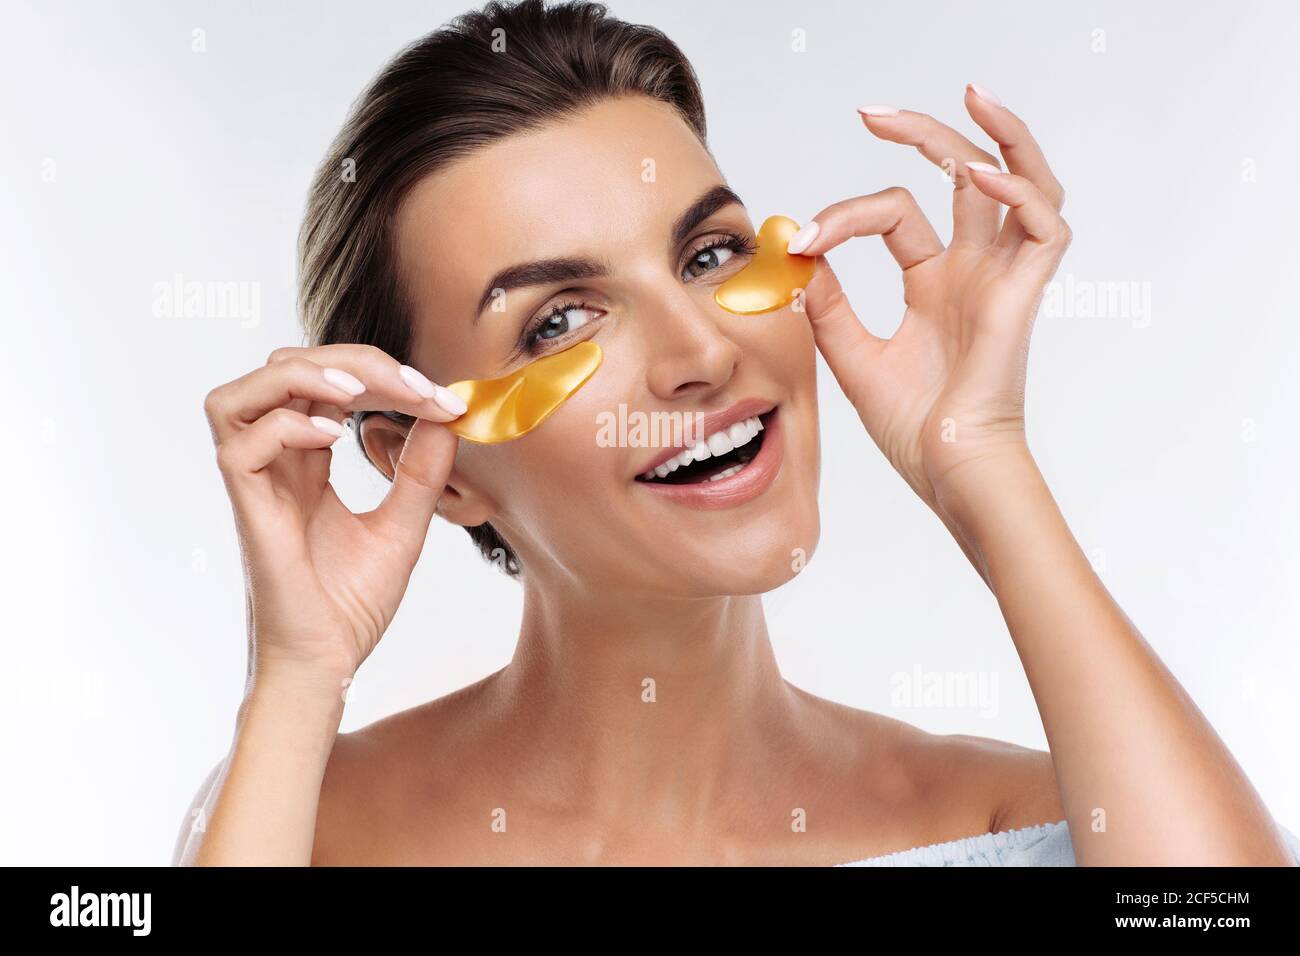 Donna felice che applica le macchie dorate di idrogel ialuronico sotto gli occhi, isolato su sfondo bianco. Cura della pelle, trattamento di bellezza per ridurre la puffiness Foto Stock